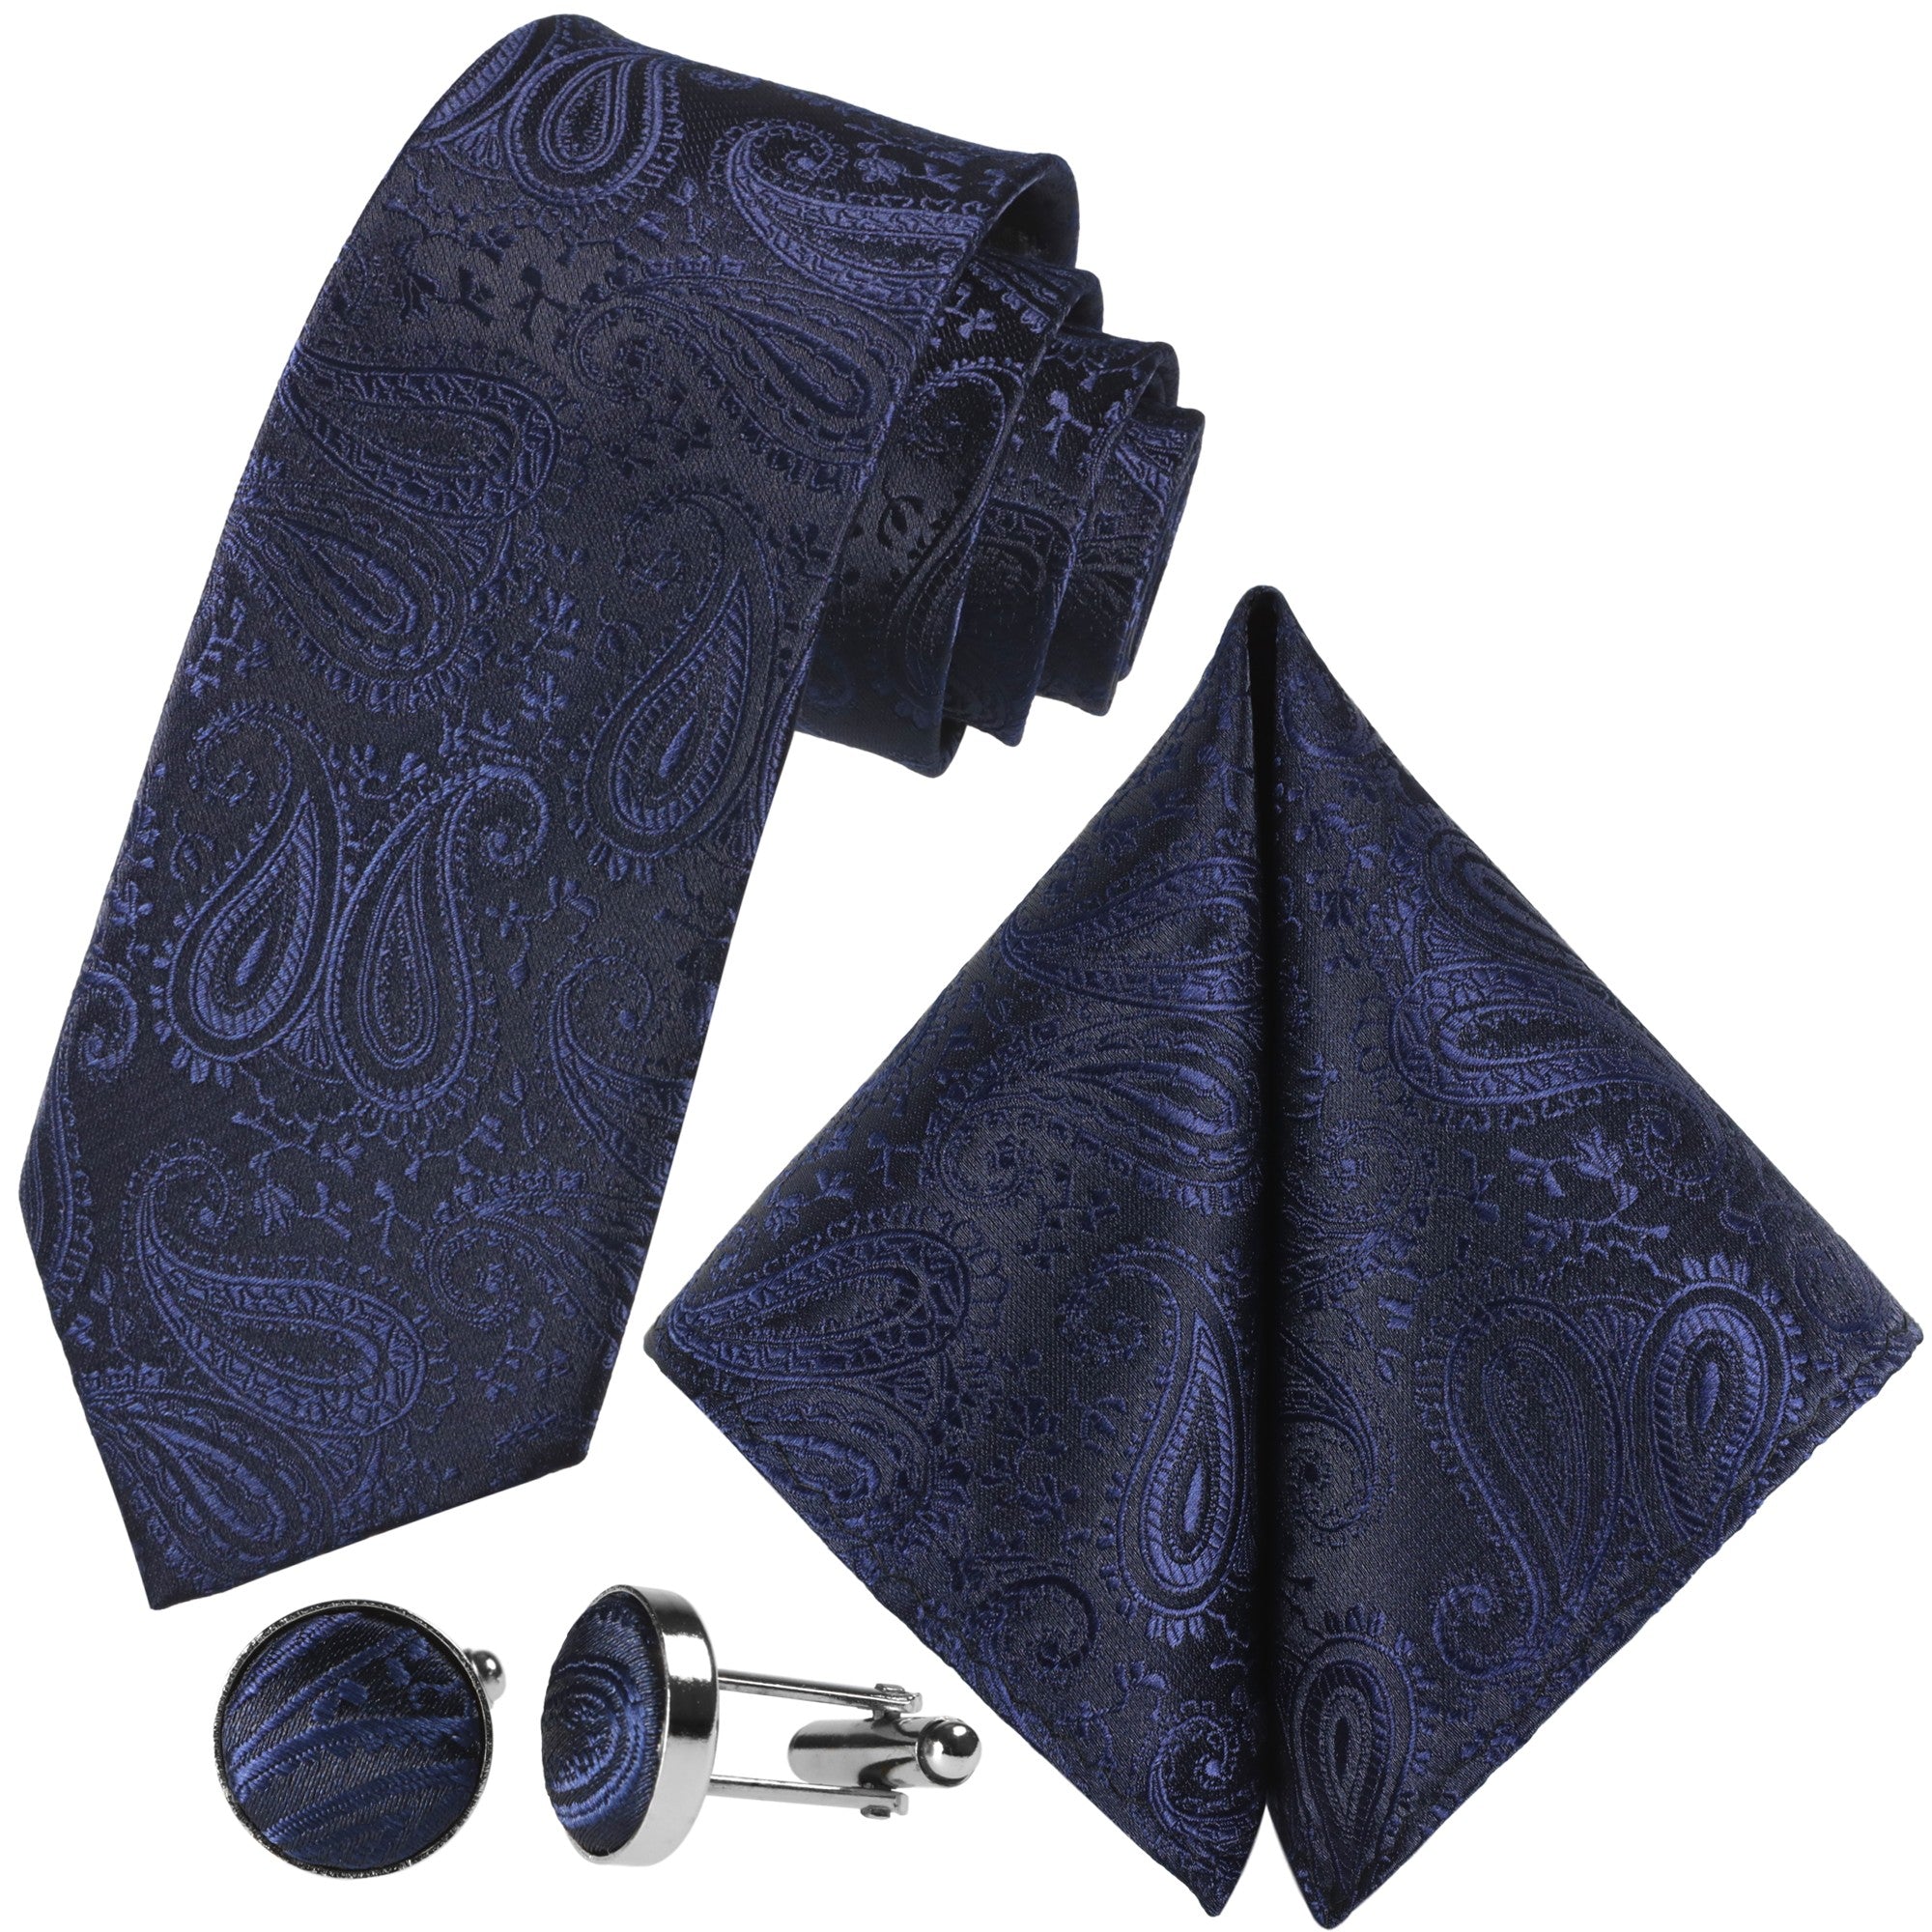 für Krawatten Kaufen | Paisley-Krawatte GASSANI - Silber-Blaue designt Sie GASSANIshop.de